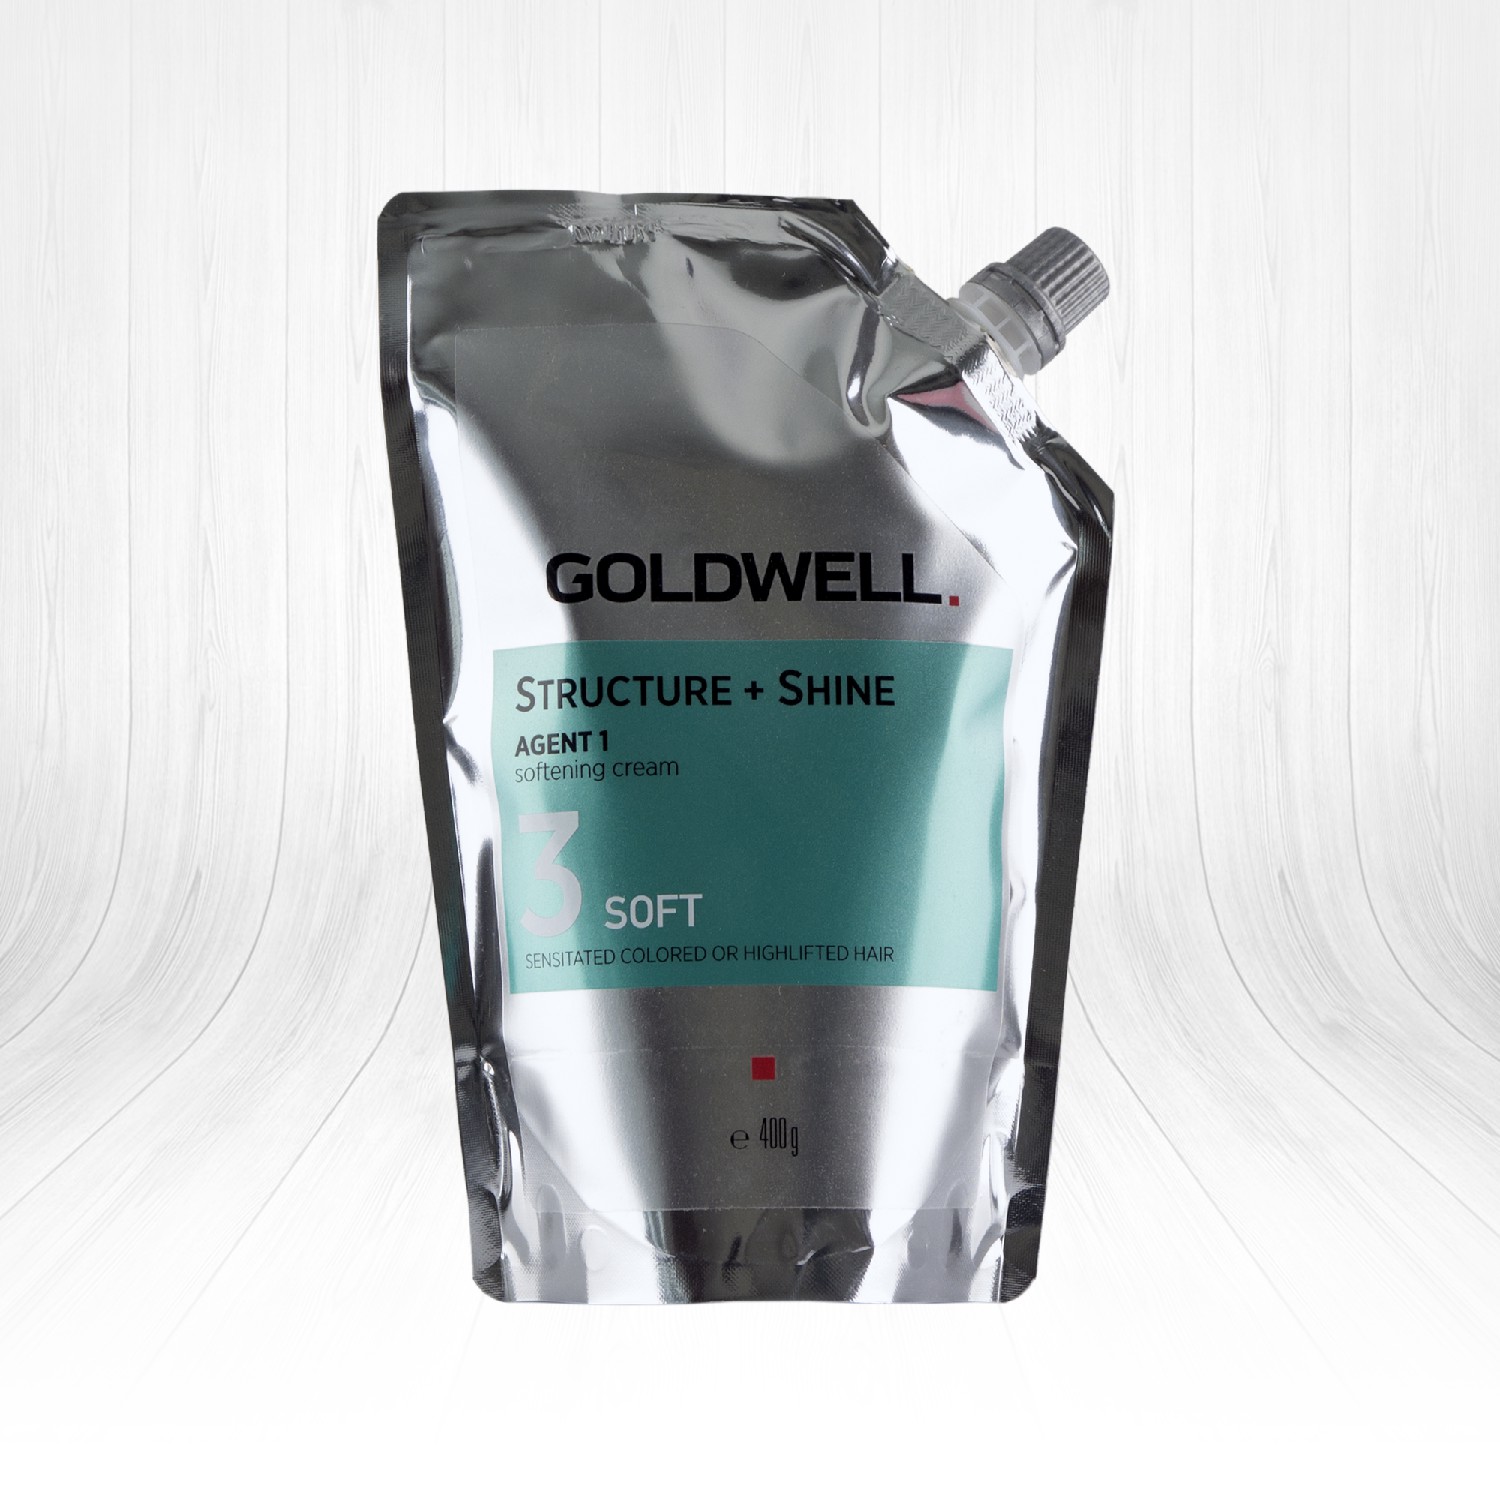 Goldwell Structure + Shine Agent Hassaslaşmış Boyalı ve Röfleli Saçlar İçin Kalıcı Düzleştirici Soft